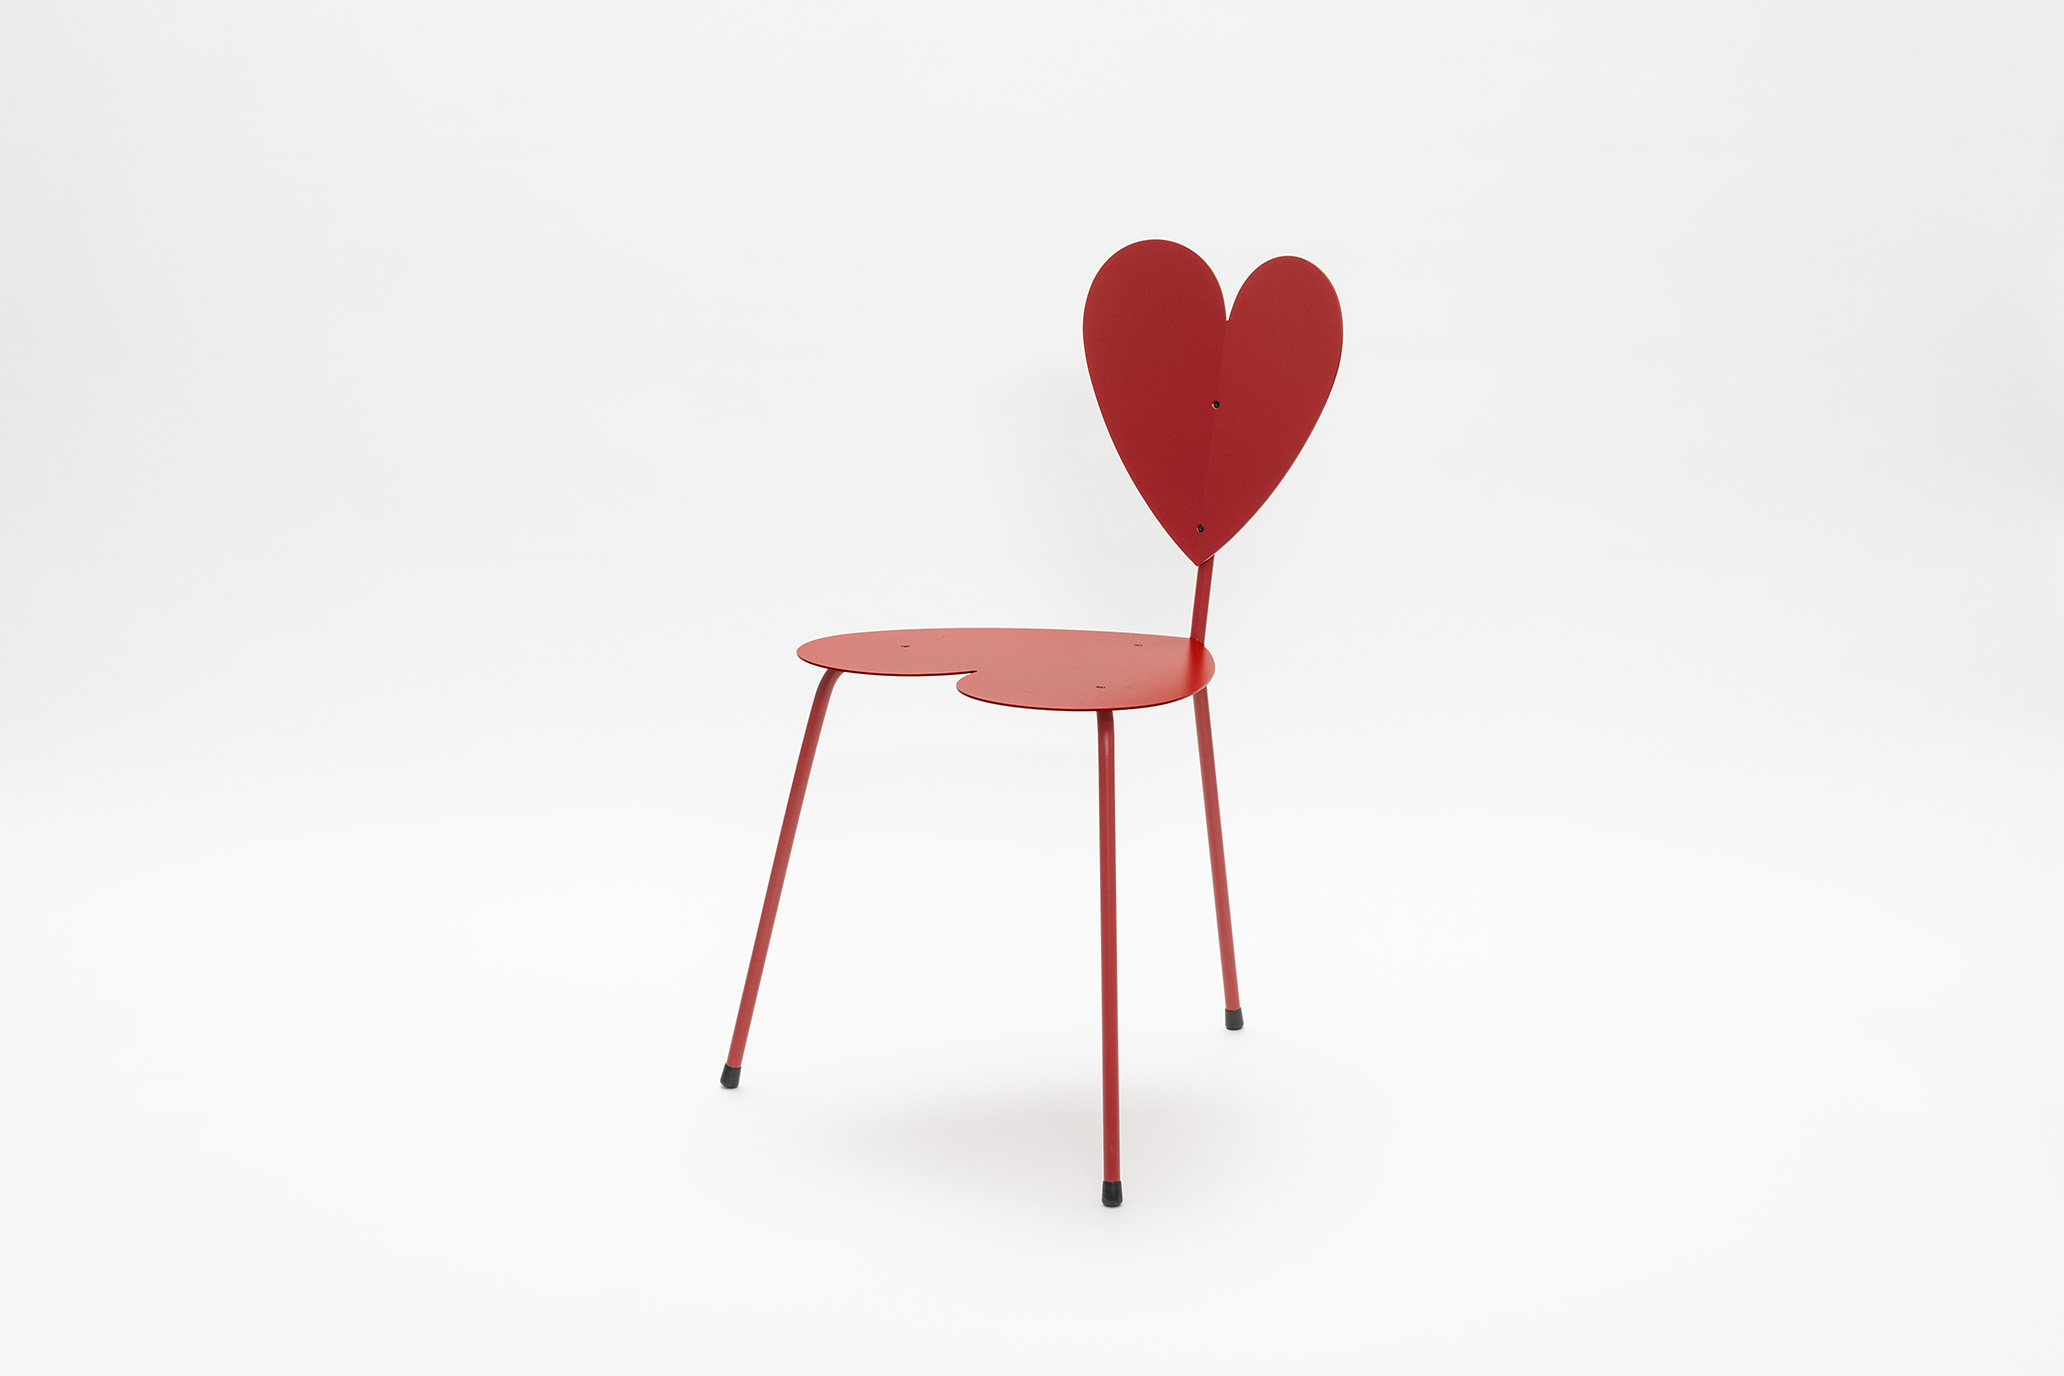 Roter Stuhl mit herzförmiger Lehne und herzförmigem Sitz